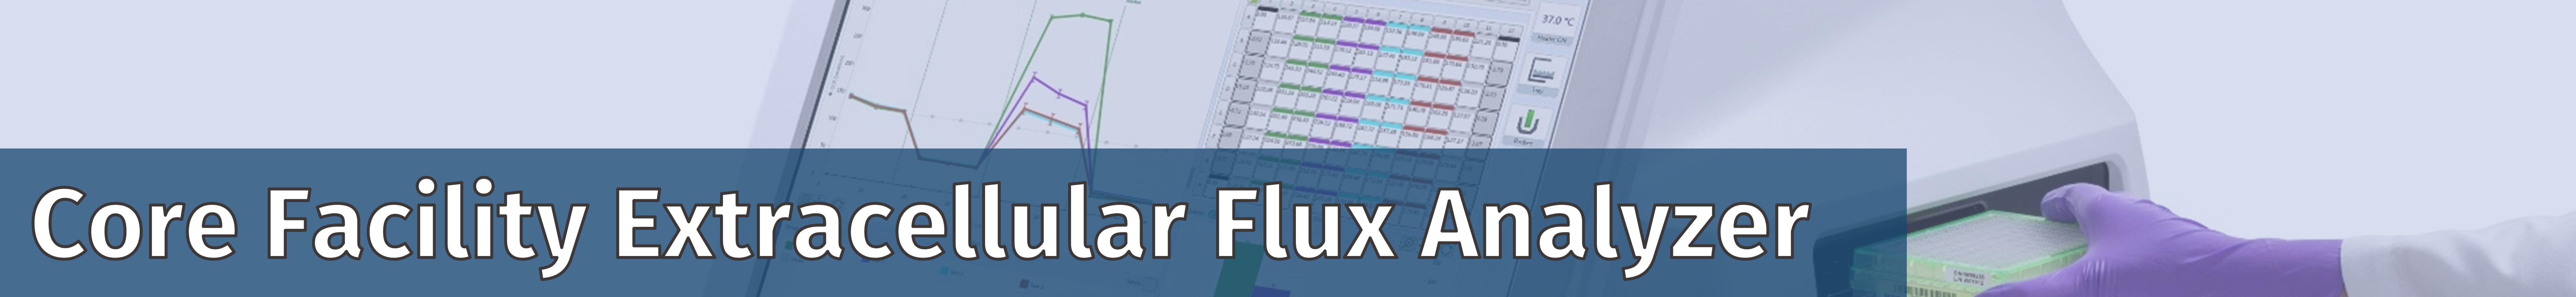 Bannertitel der CF Extracellular Flux Analyzer